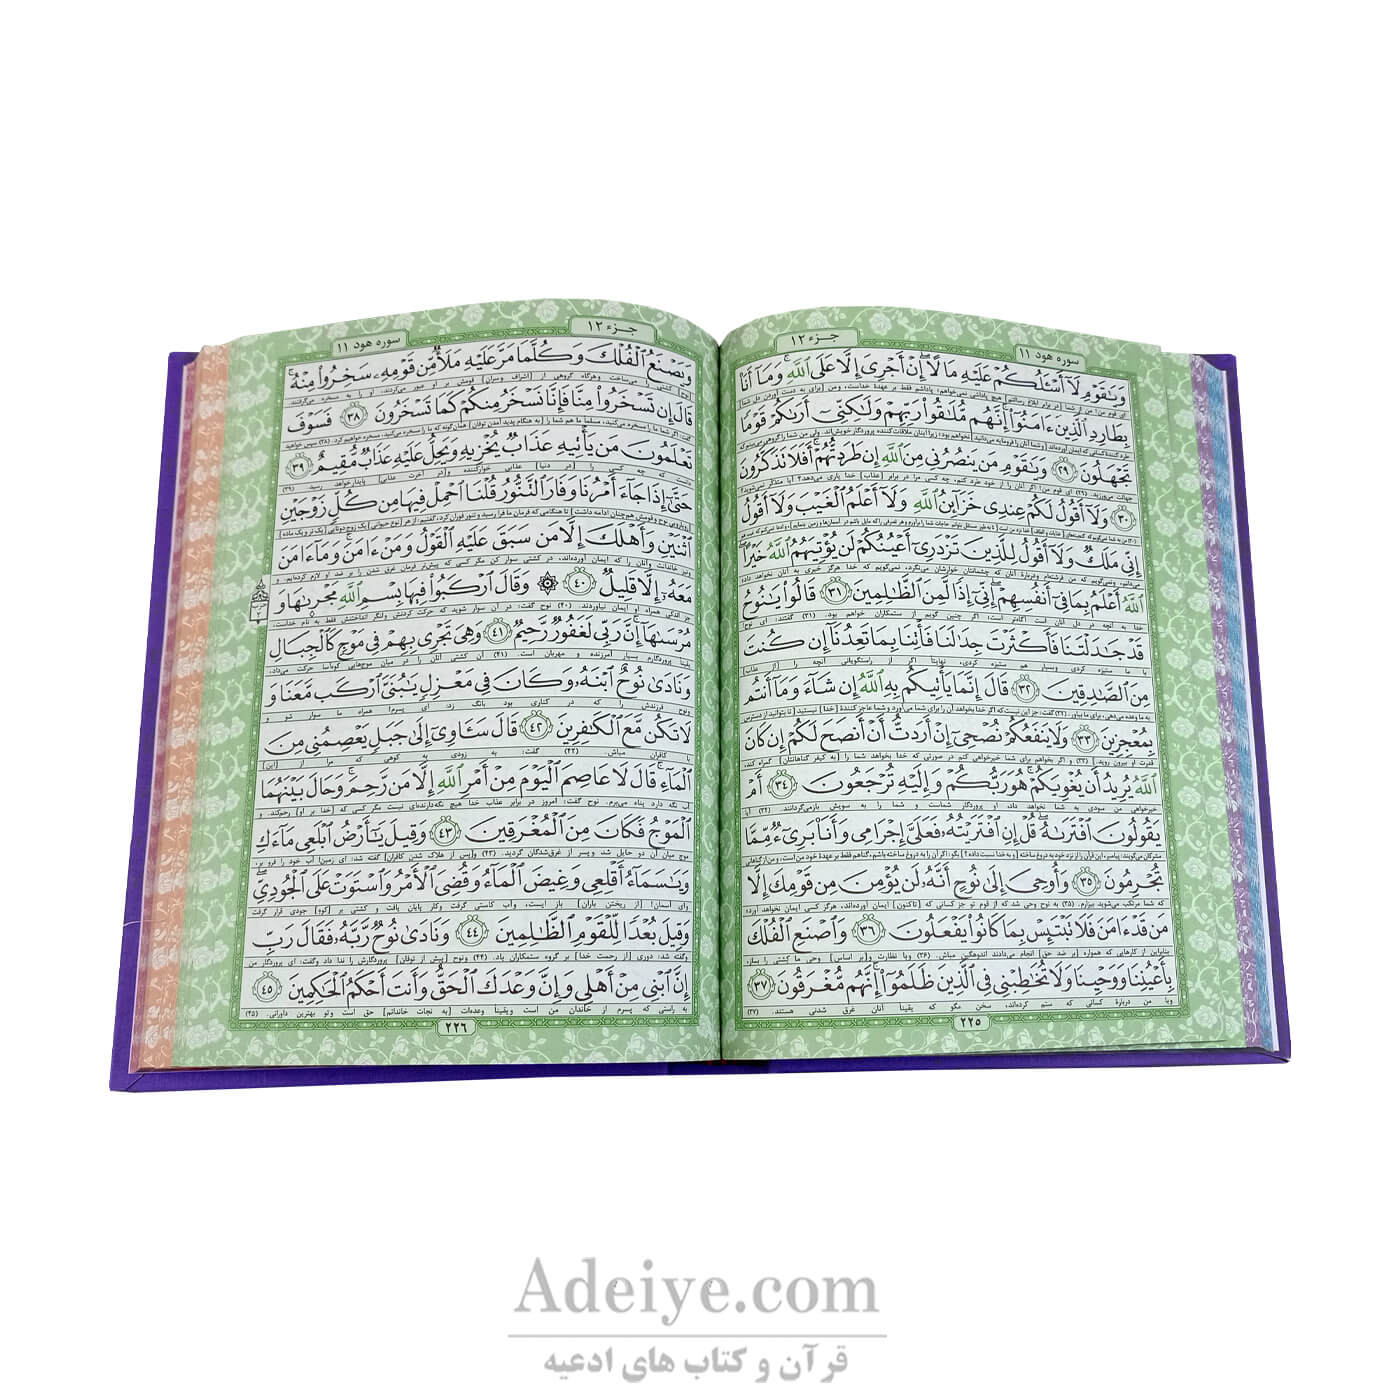 کتاب قرآن (وزیری، گالینگور، عثمان طه)-عکس متن3